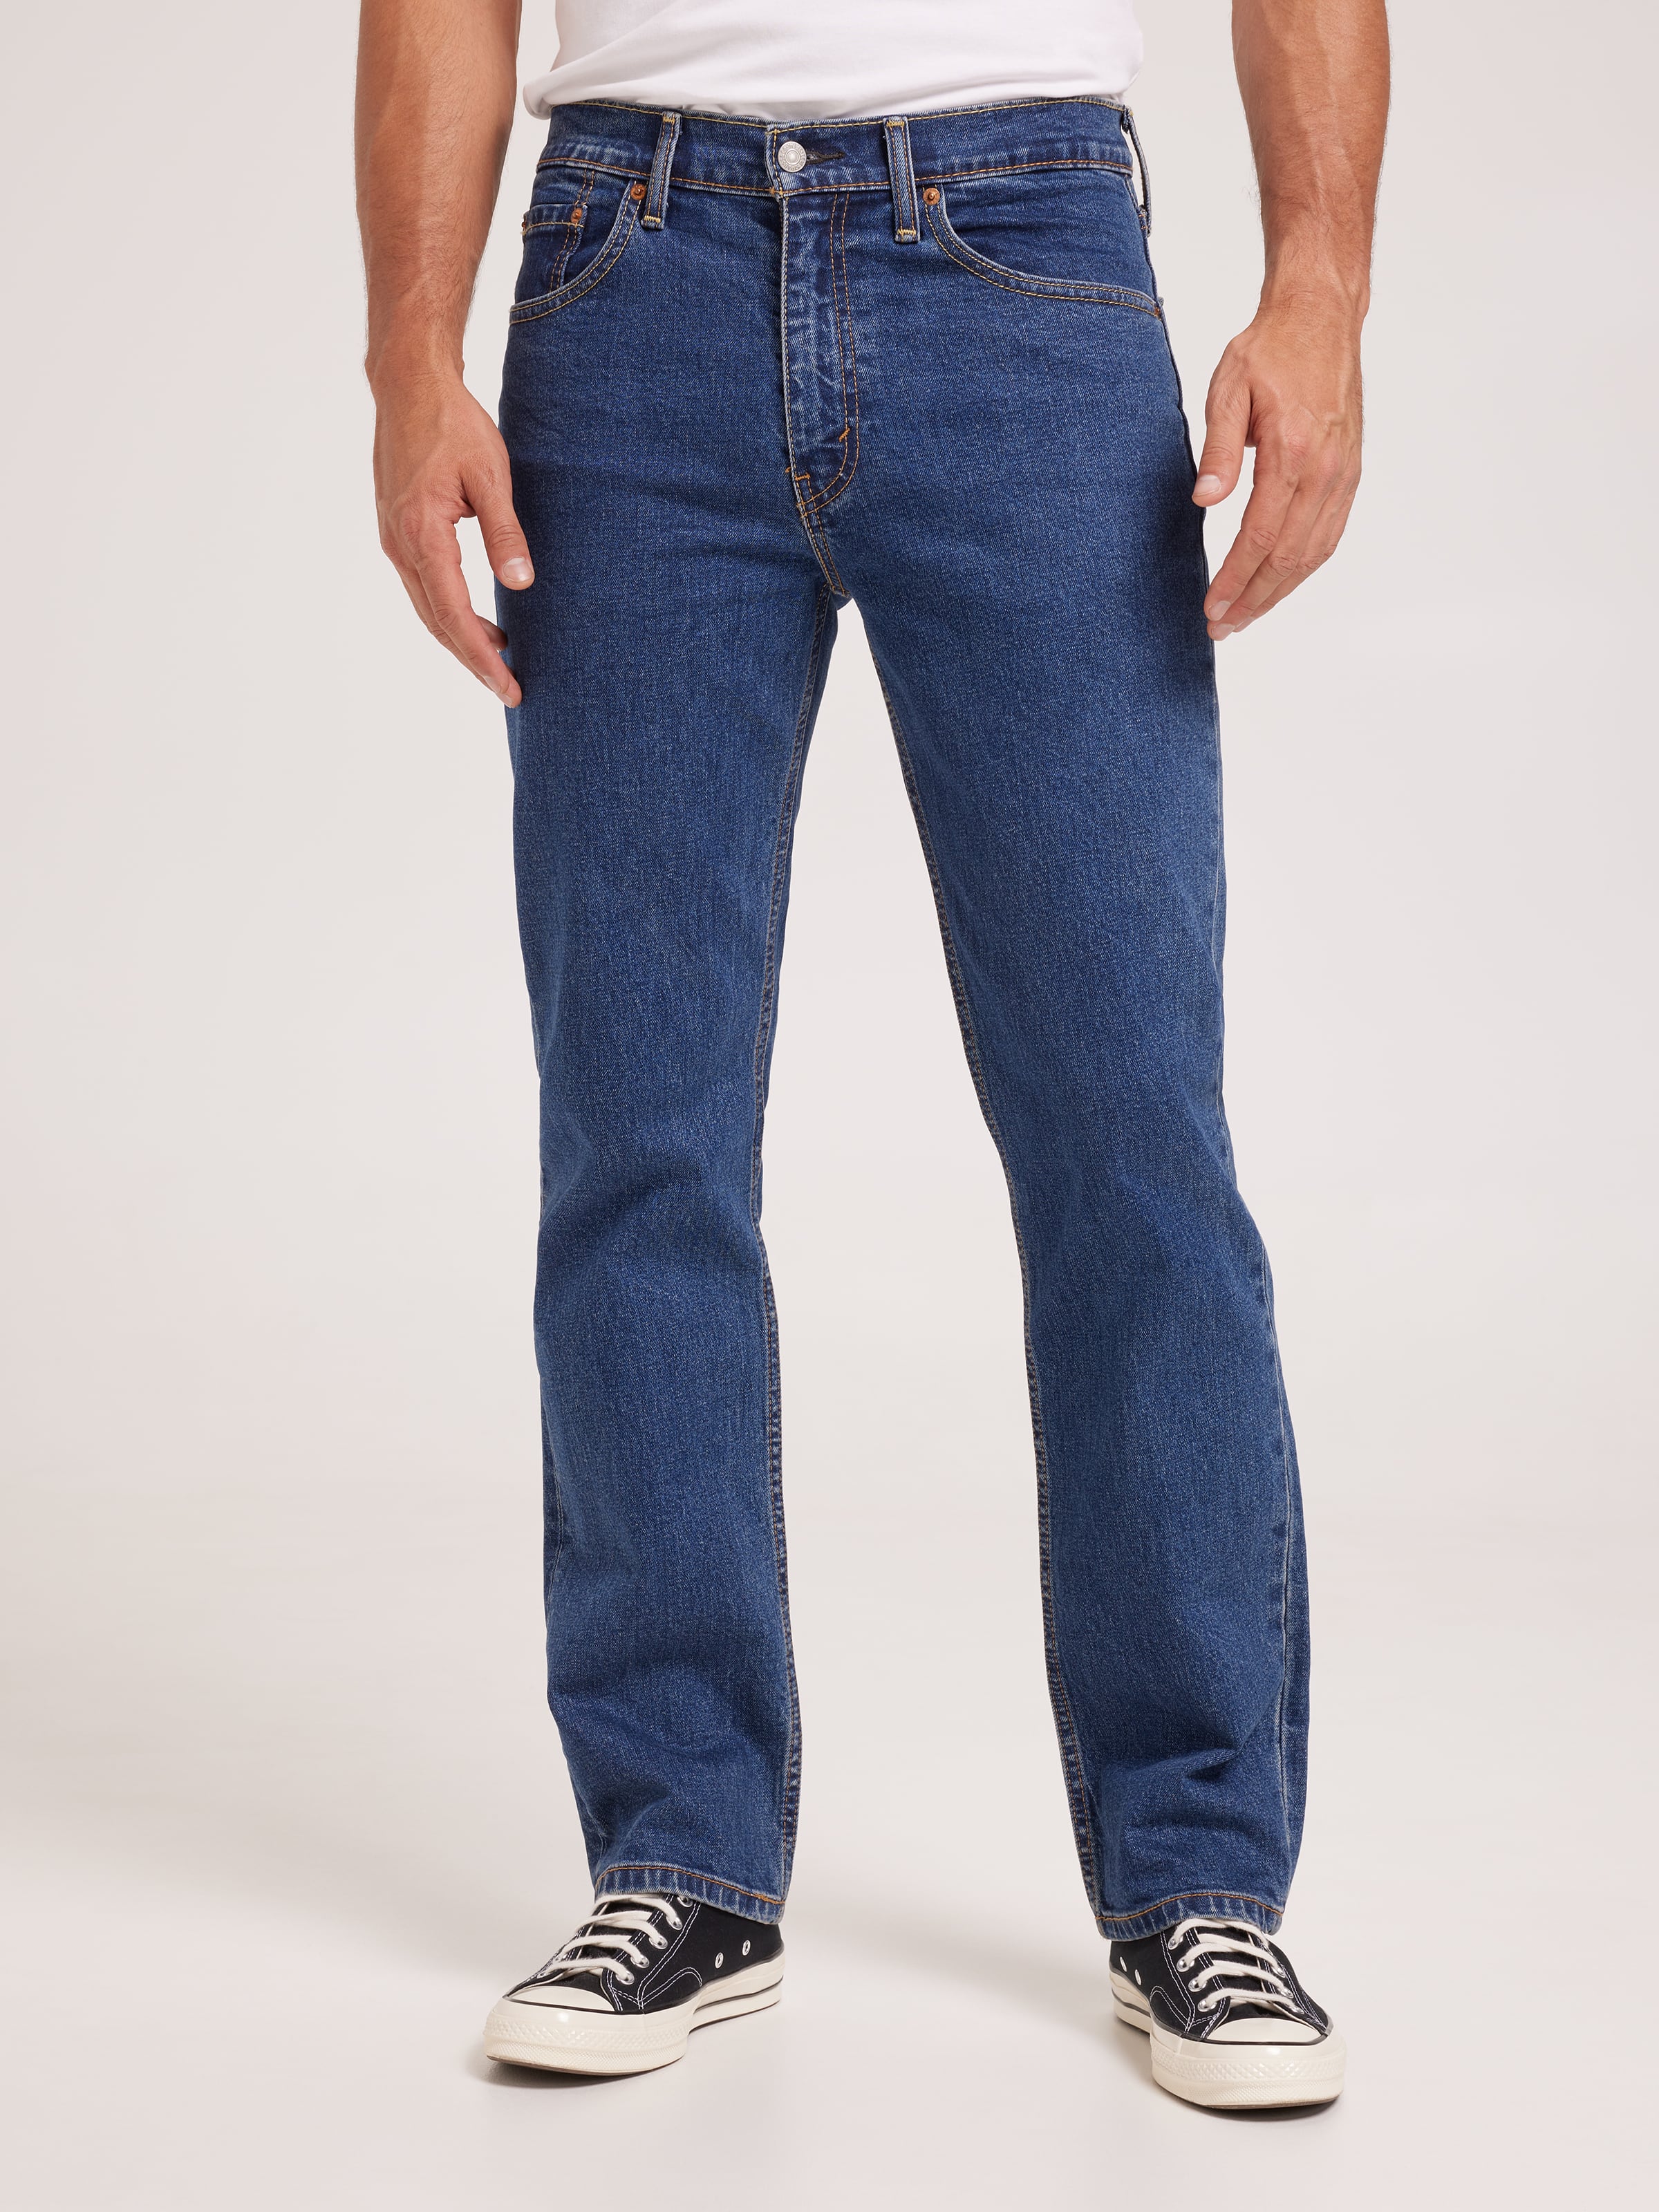 Men's Levi's  Just Jeans Online